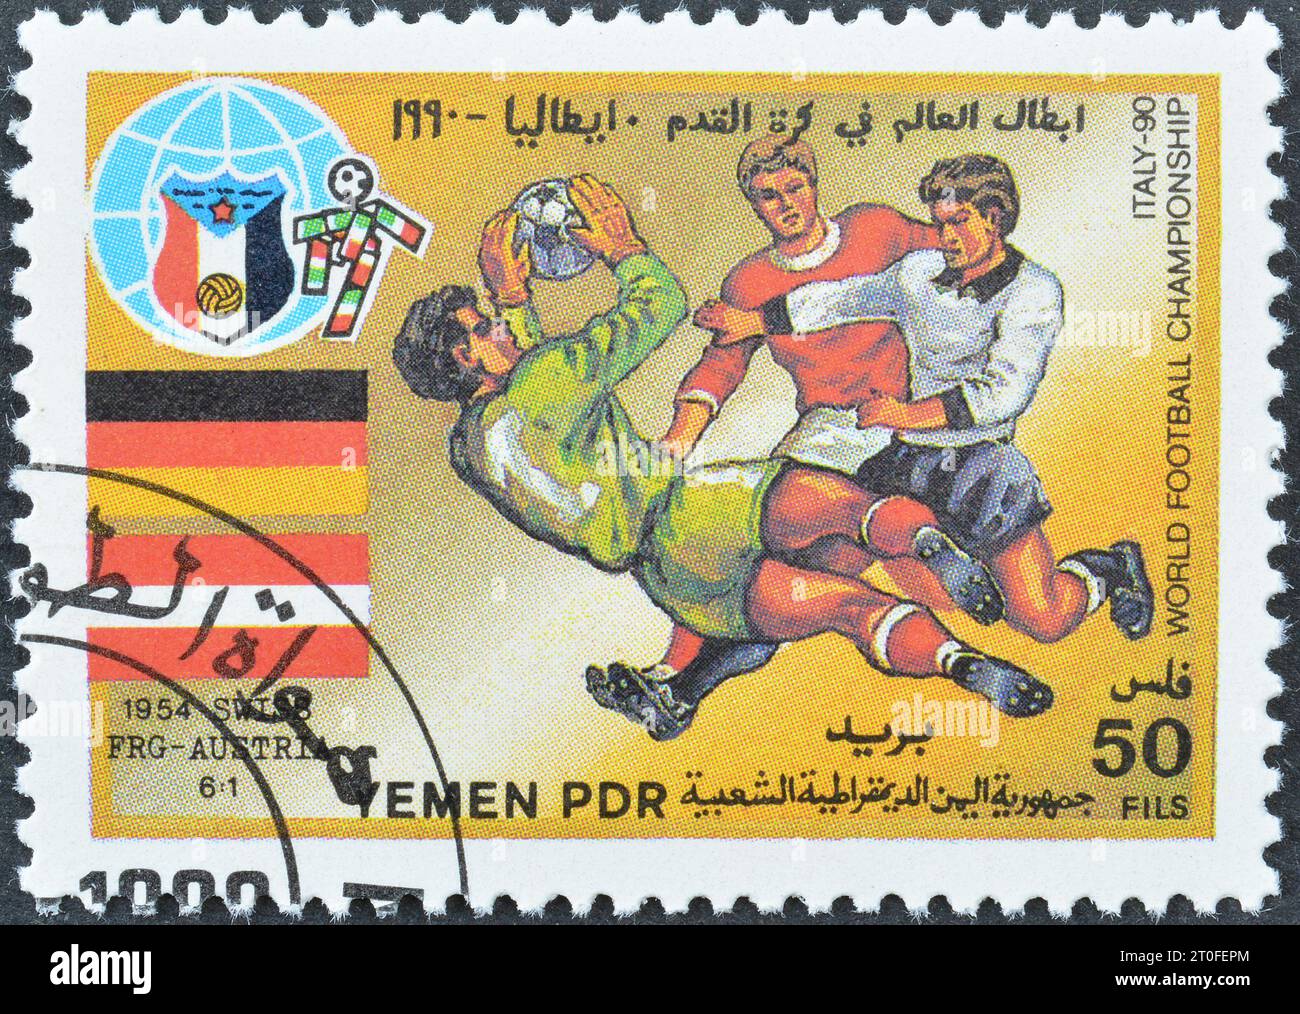 Gestempelte Briefmarke, gedruckt vom Jemen, die das Spiel Westdeutschland-Österreich 1934, FIFA Fussball-Weltmeisterschaft 1990 - Italien, ca. 1990 zeigt. Stockfoto